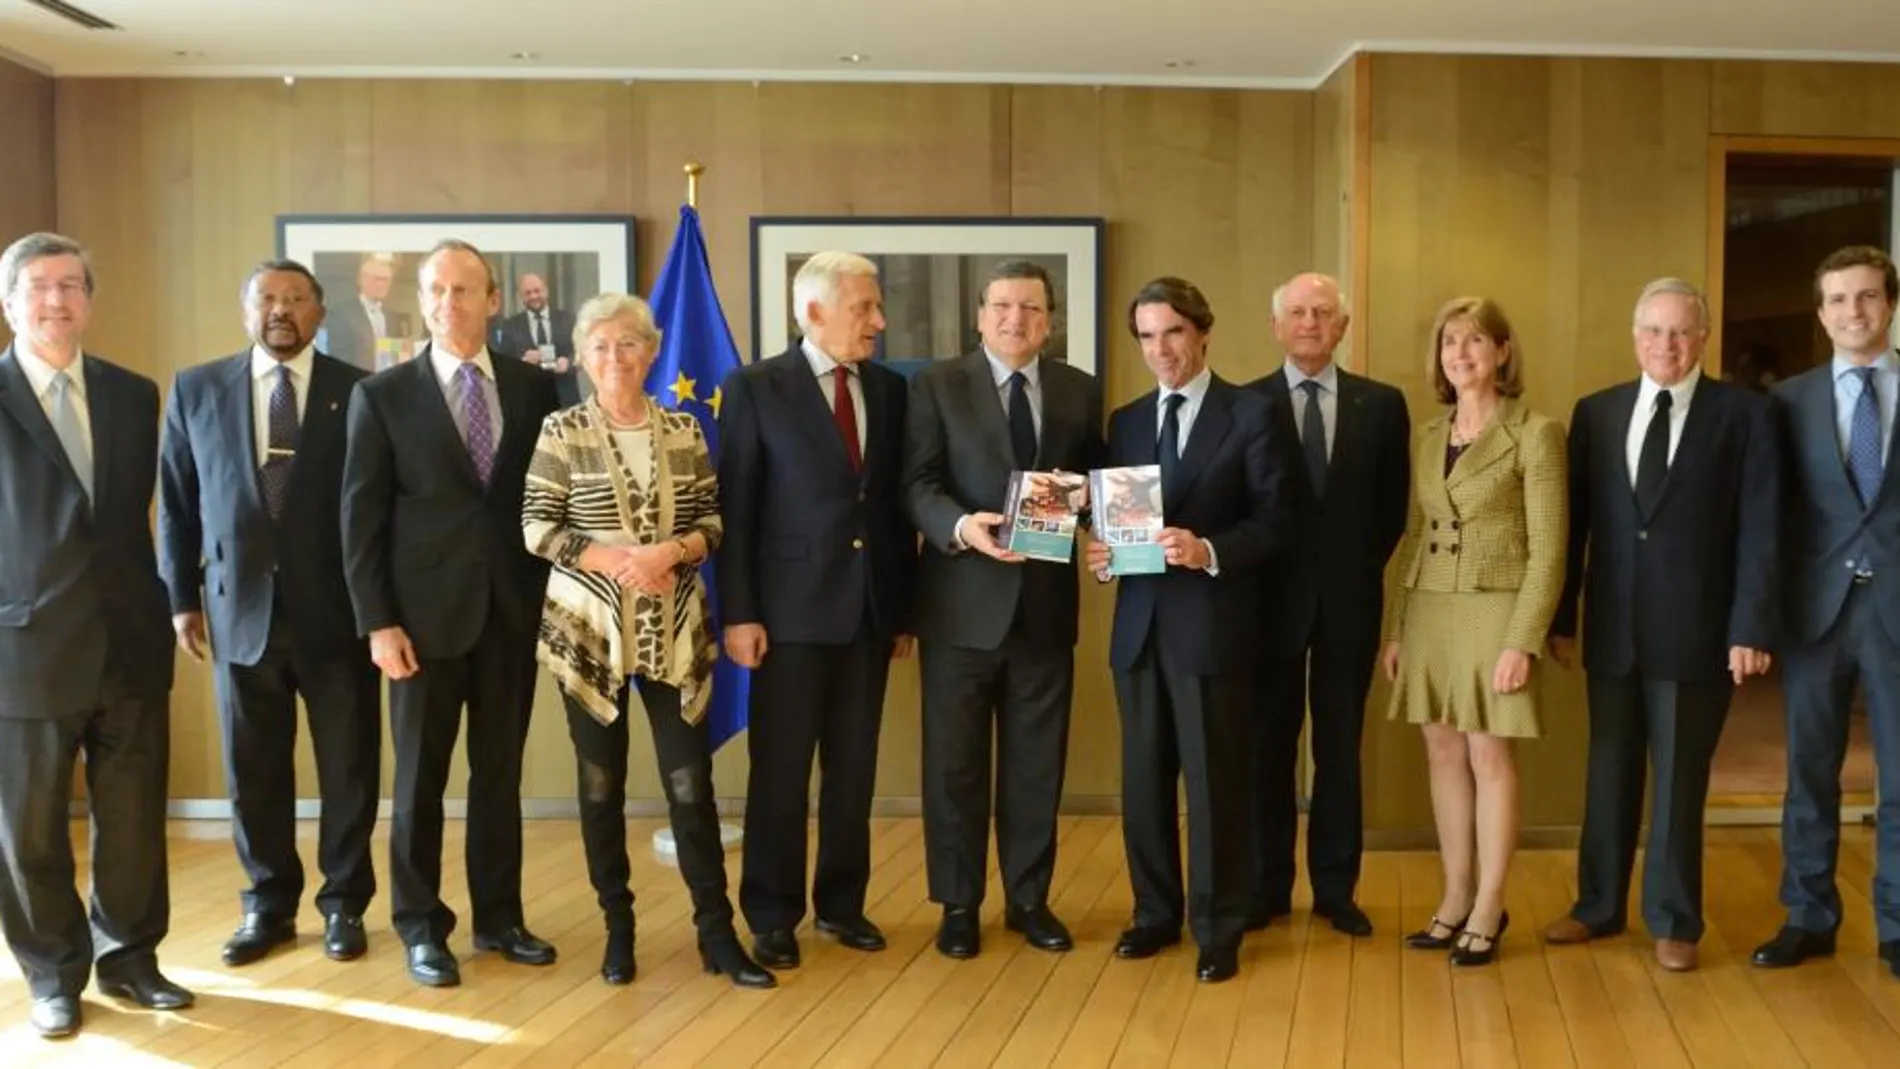 El expresidente del Gobierno y presidente de la Fundación FAES, José María Aznar, presentó en Bruselas el libro blanco de la Atlantic Basin Initiative (ABI) Una nueva comunidad atlántica: generar crecimiento, desarrollo humano y seguridad en el hemisferio atlántico